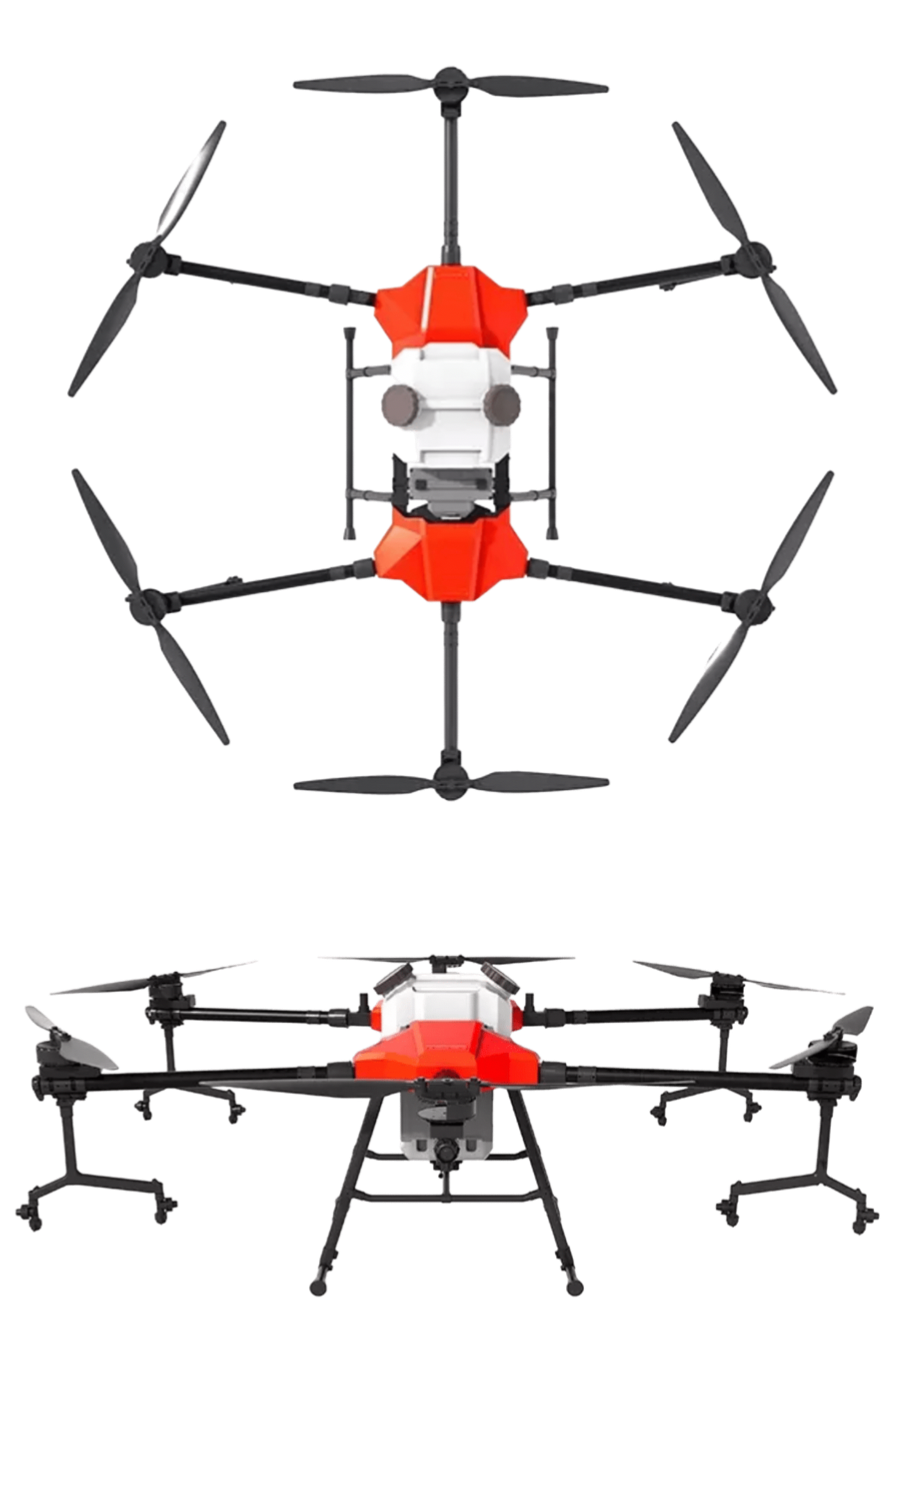 Zhaoxen fabrica de drones fumigadores, drones para fumigación de cultivos y análisis multiespectral con drones DJI PARROT AUTEL